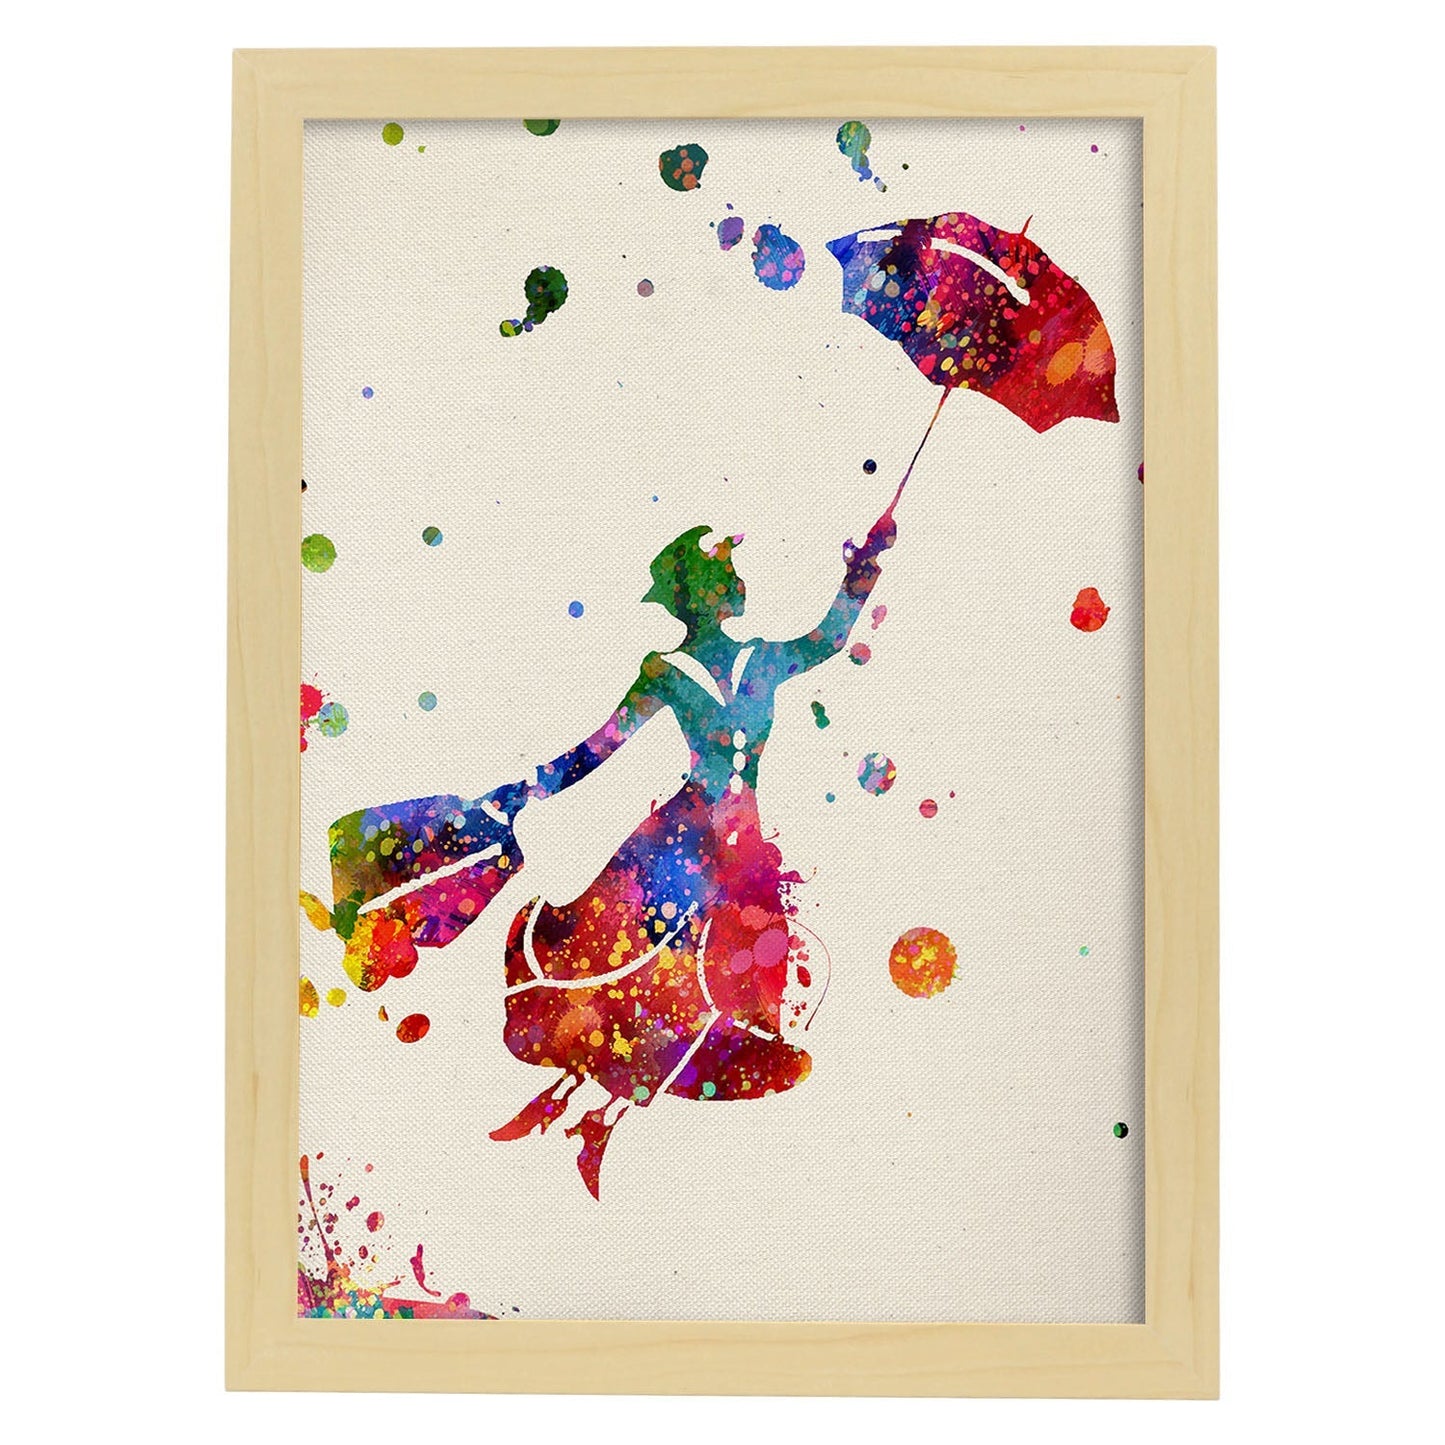 Lámina de la famosa pelicula Mary Poppins (volando) en Poster estilo explosión de color . Papel 250 gr.-Artwork-Nacnic-A4-Marco Madera clara-Nacnic Estudio SL